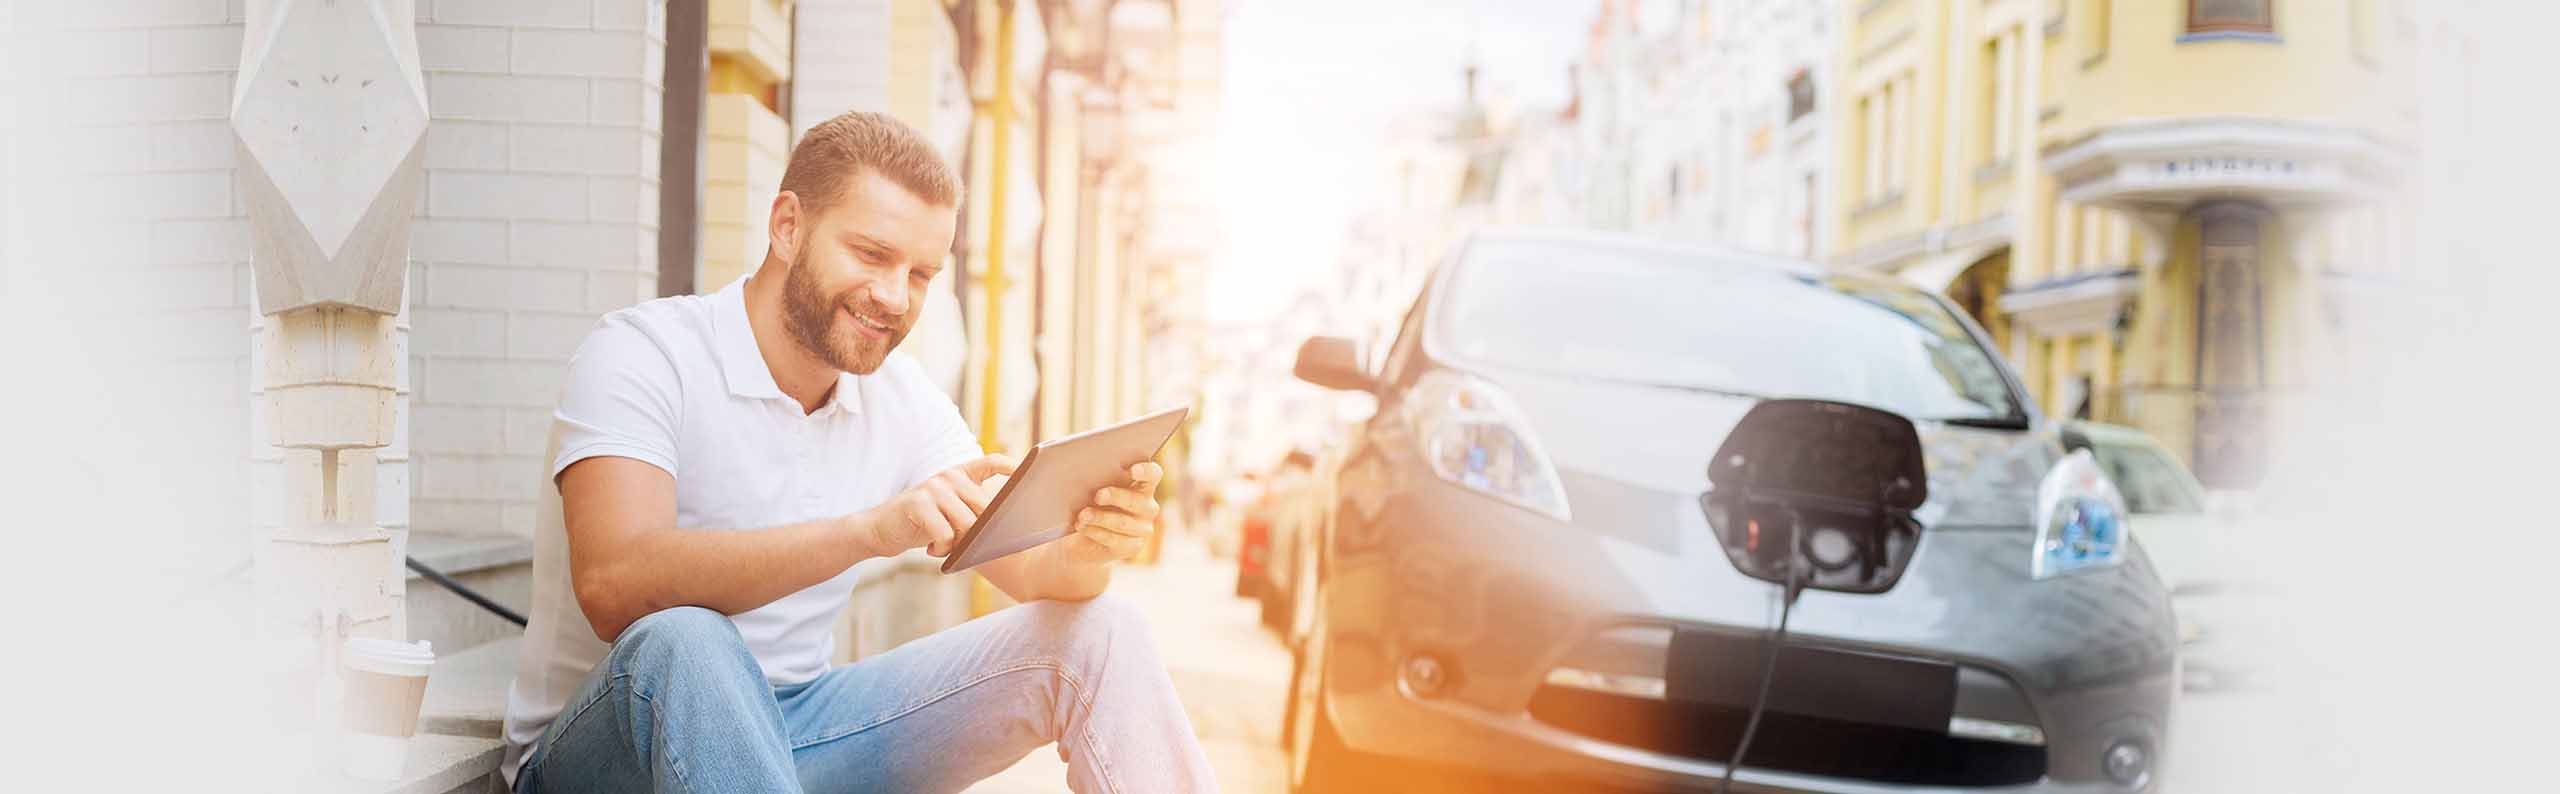 Glücklicher mann hält ein Tablet während er sein E-Auto tankt